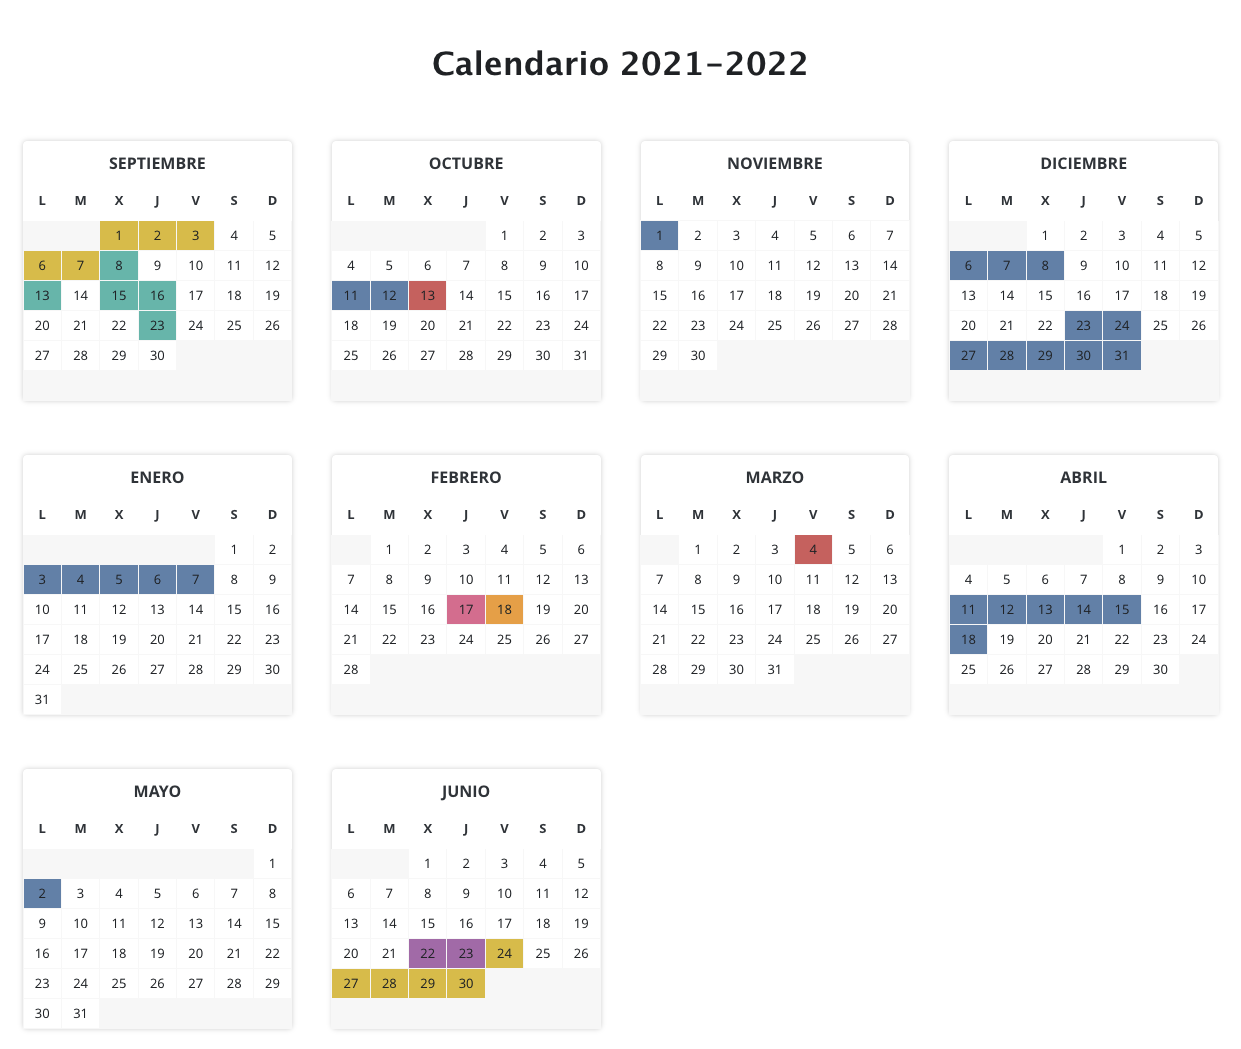 Calendario escolar 2021-2022, más de 70 plantillas y horarios para imprimir 2